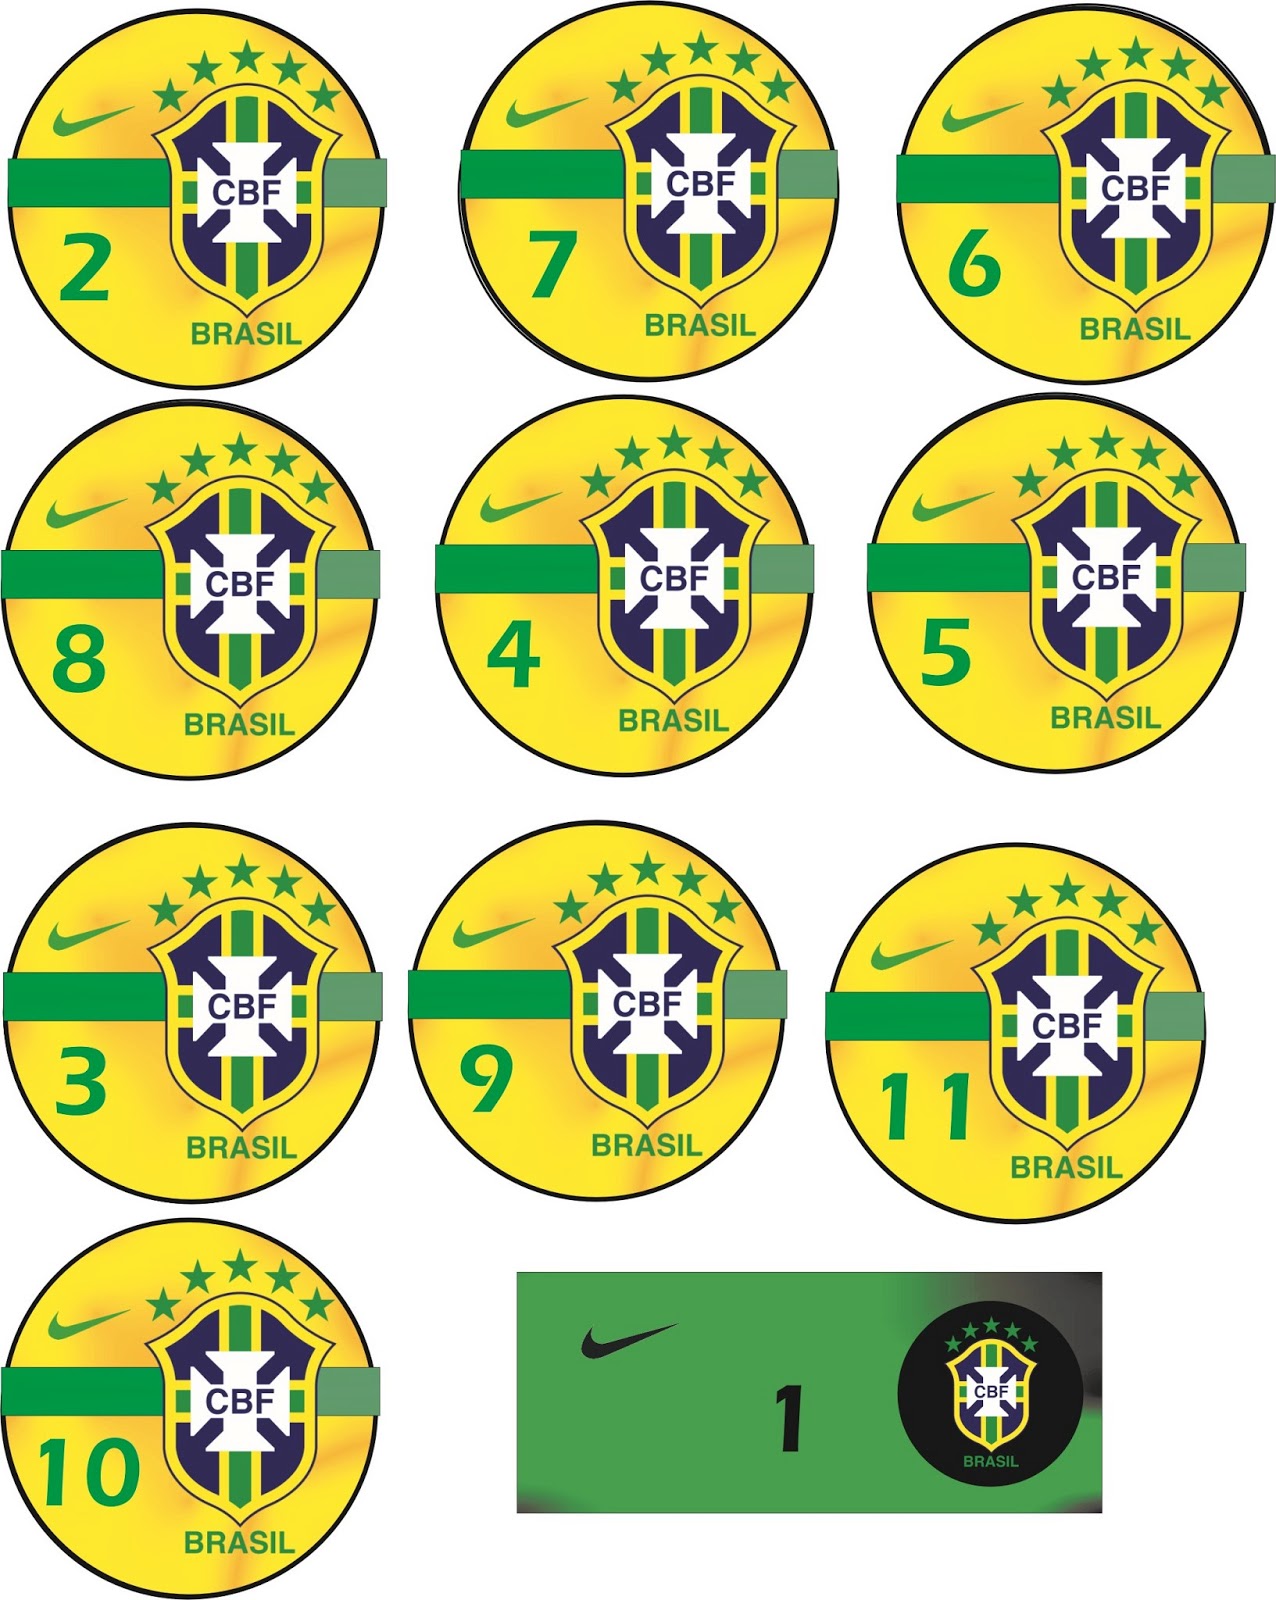 1 Jogo / Time / Seleção de Futebol de Botão Brasil